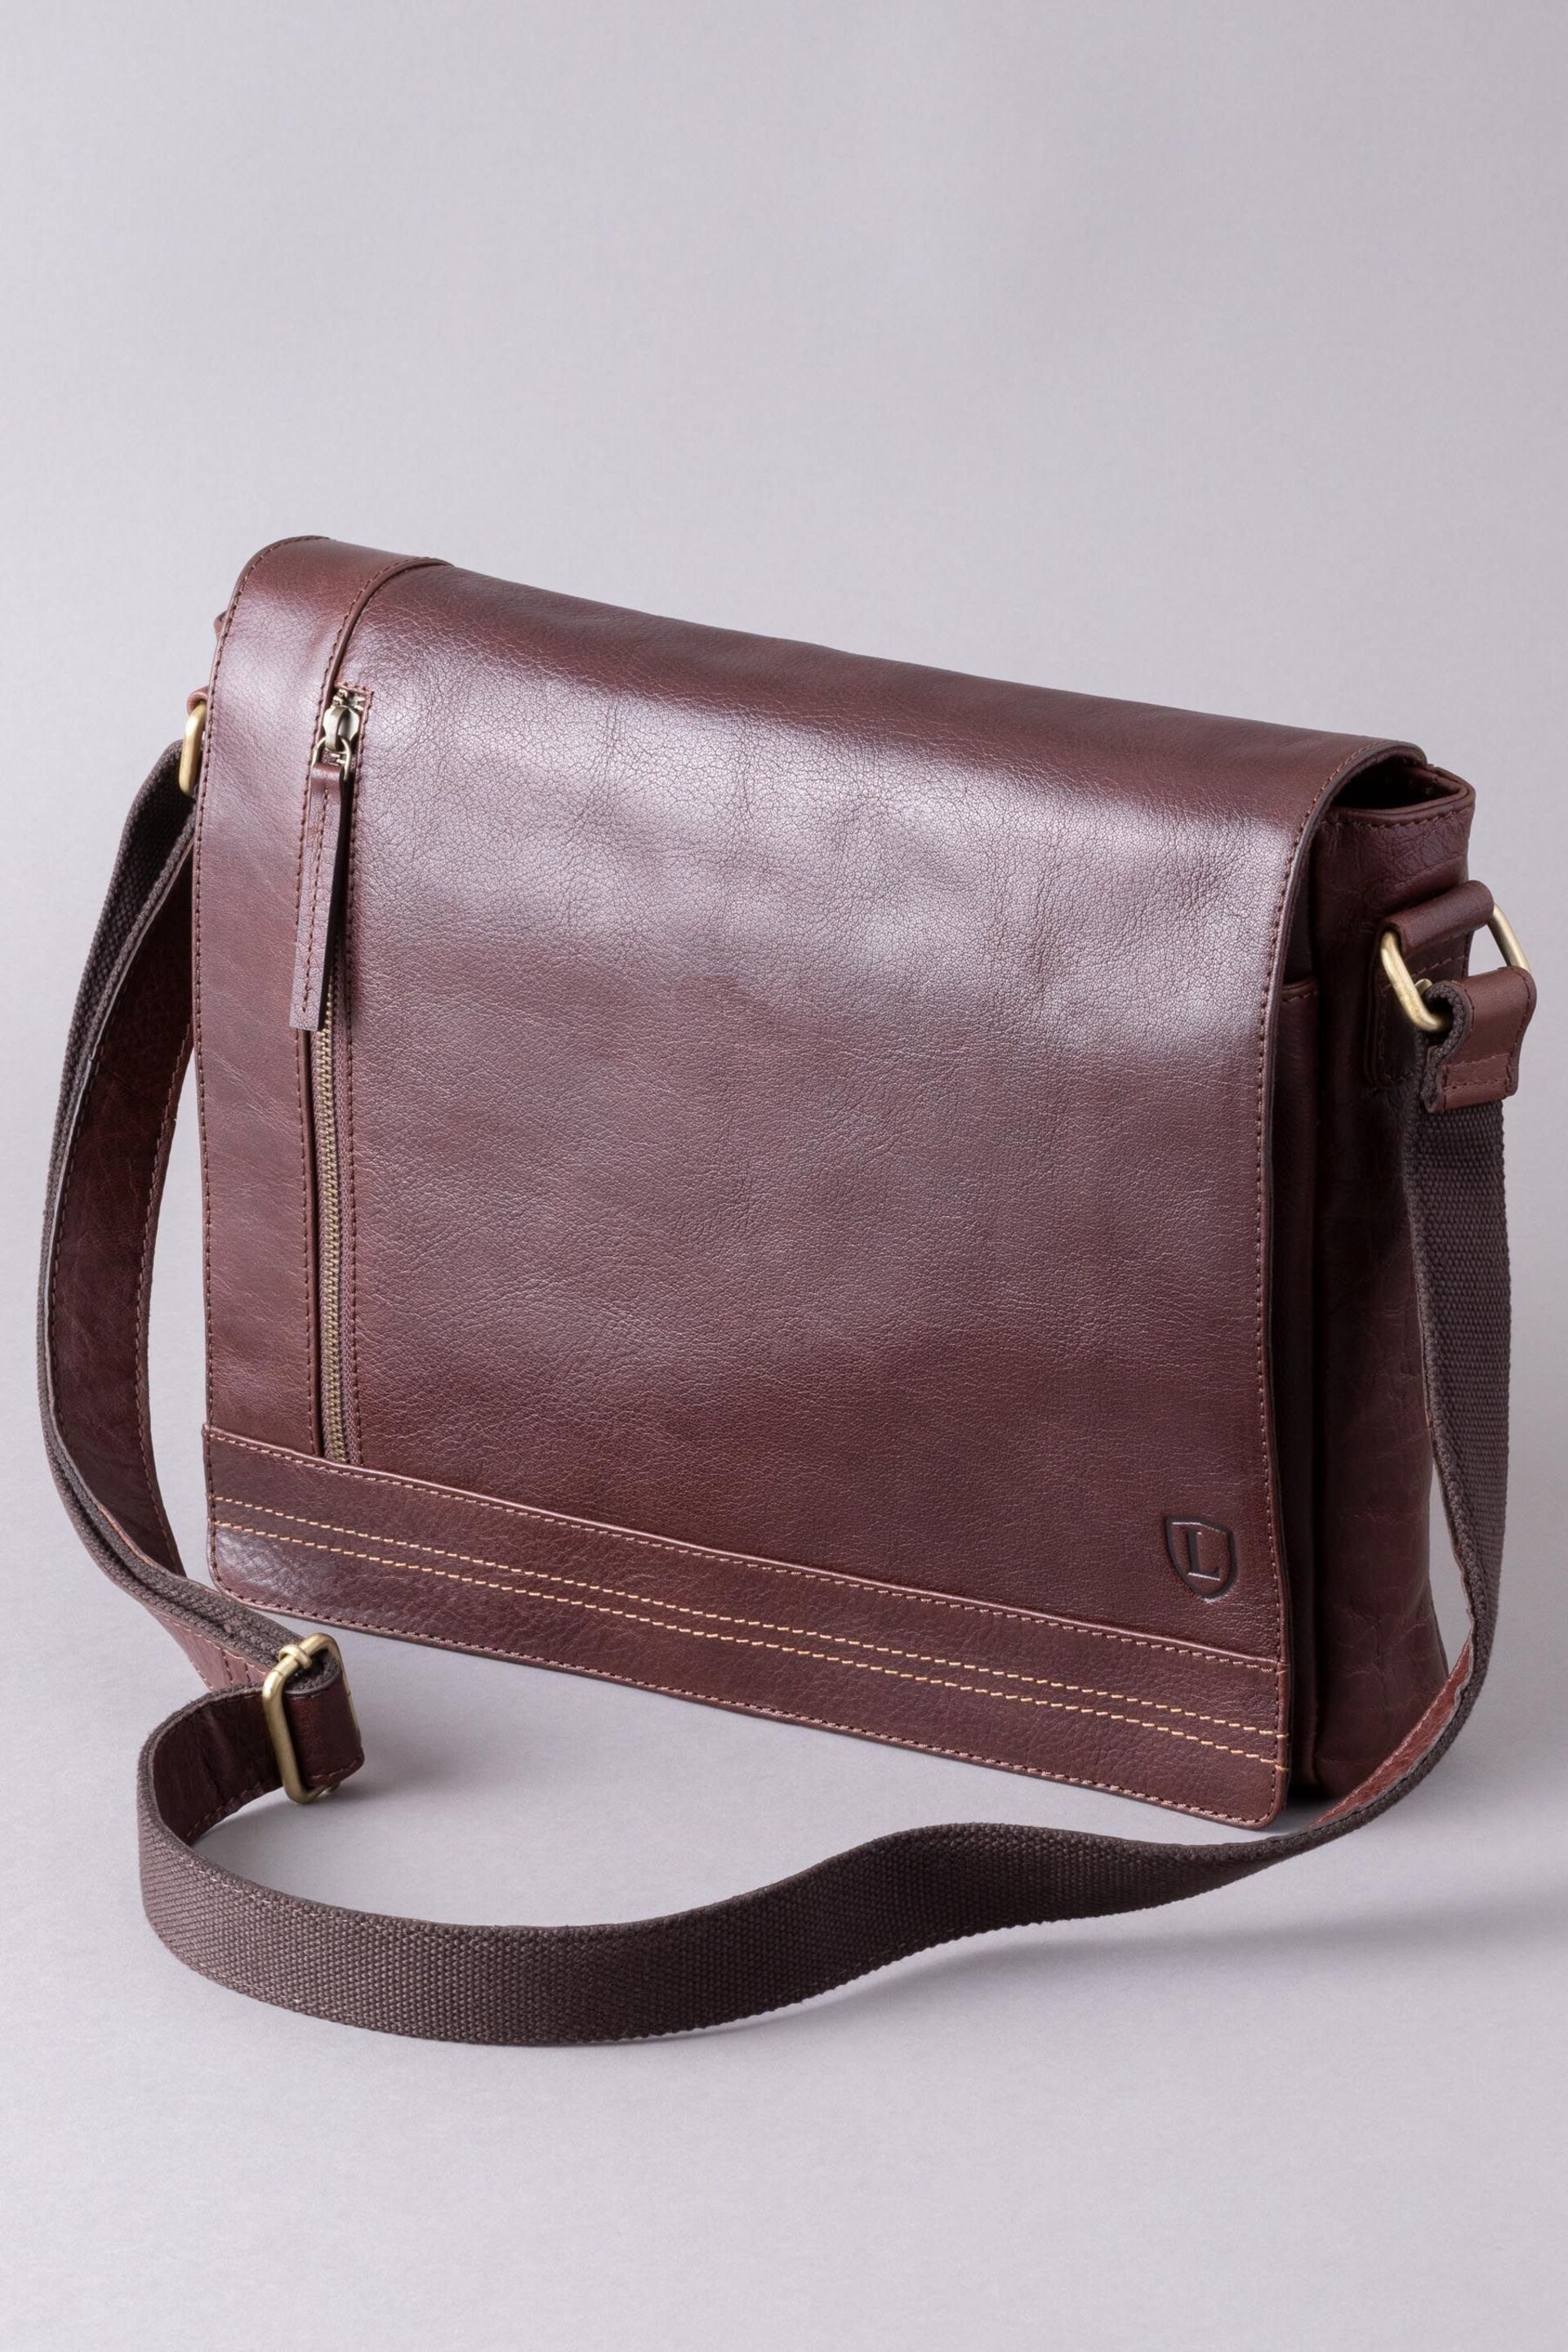 Lakeland Leather Keswick Large Leather Messenger Bag - Image 3 of 4